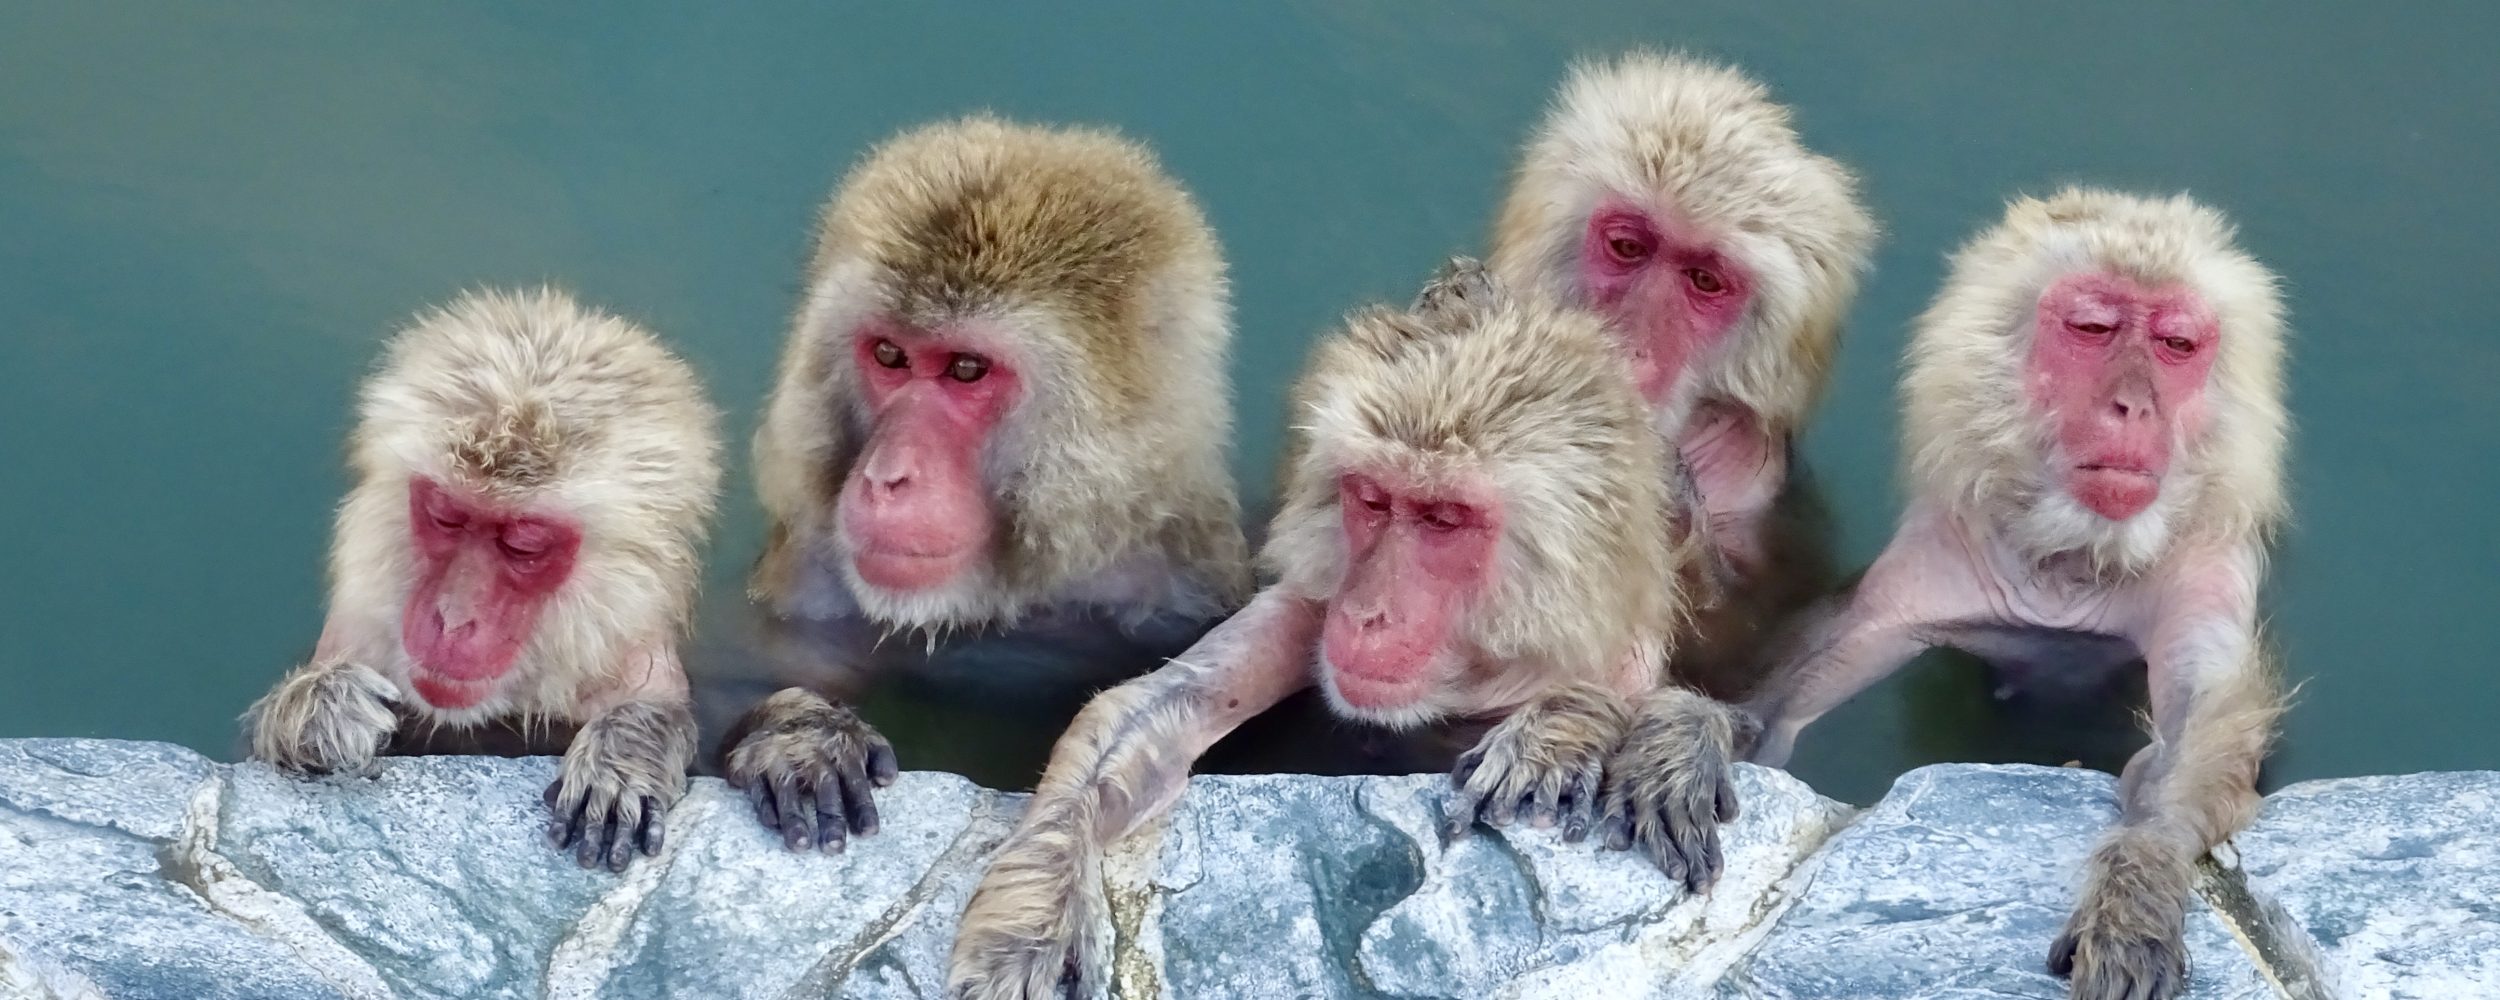 Sněžné opice v Hakodate, Japonsko